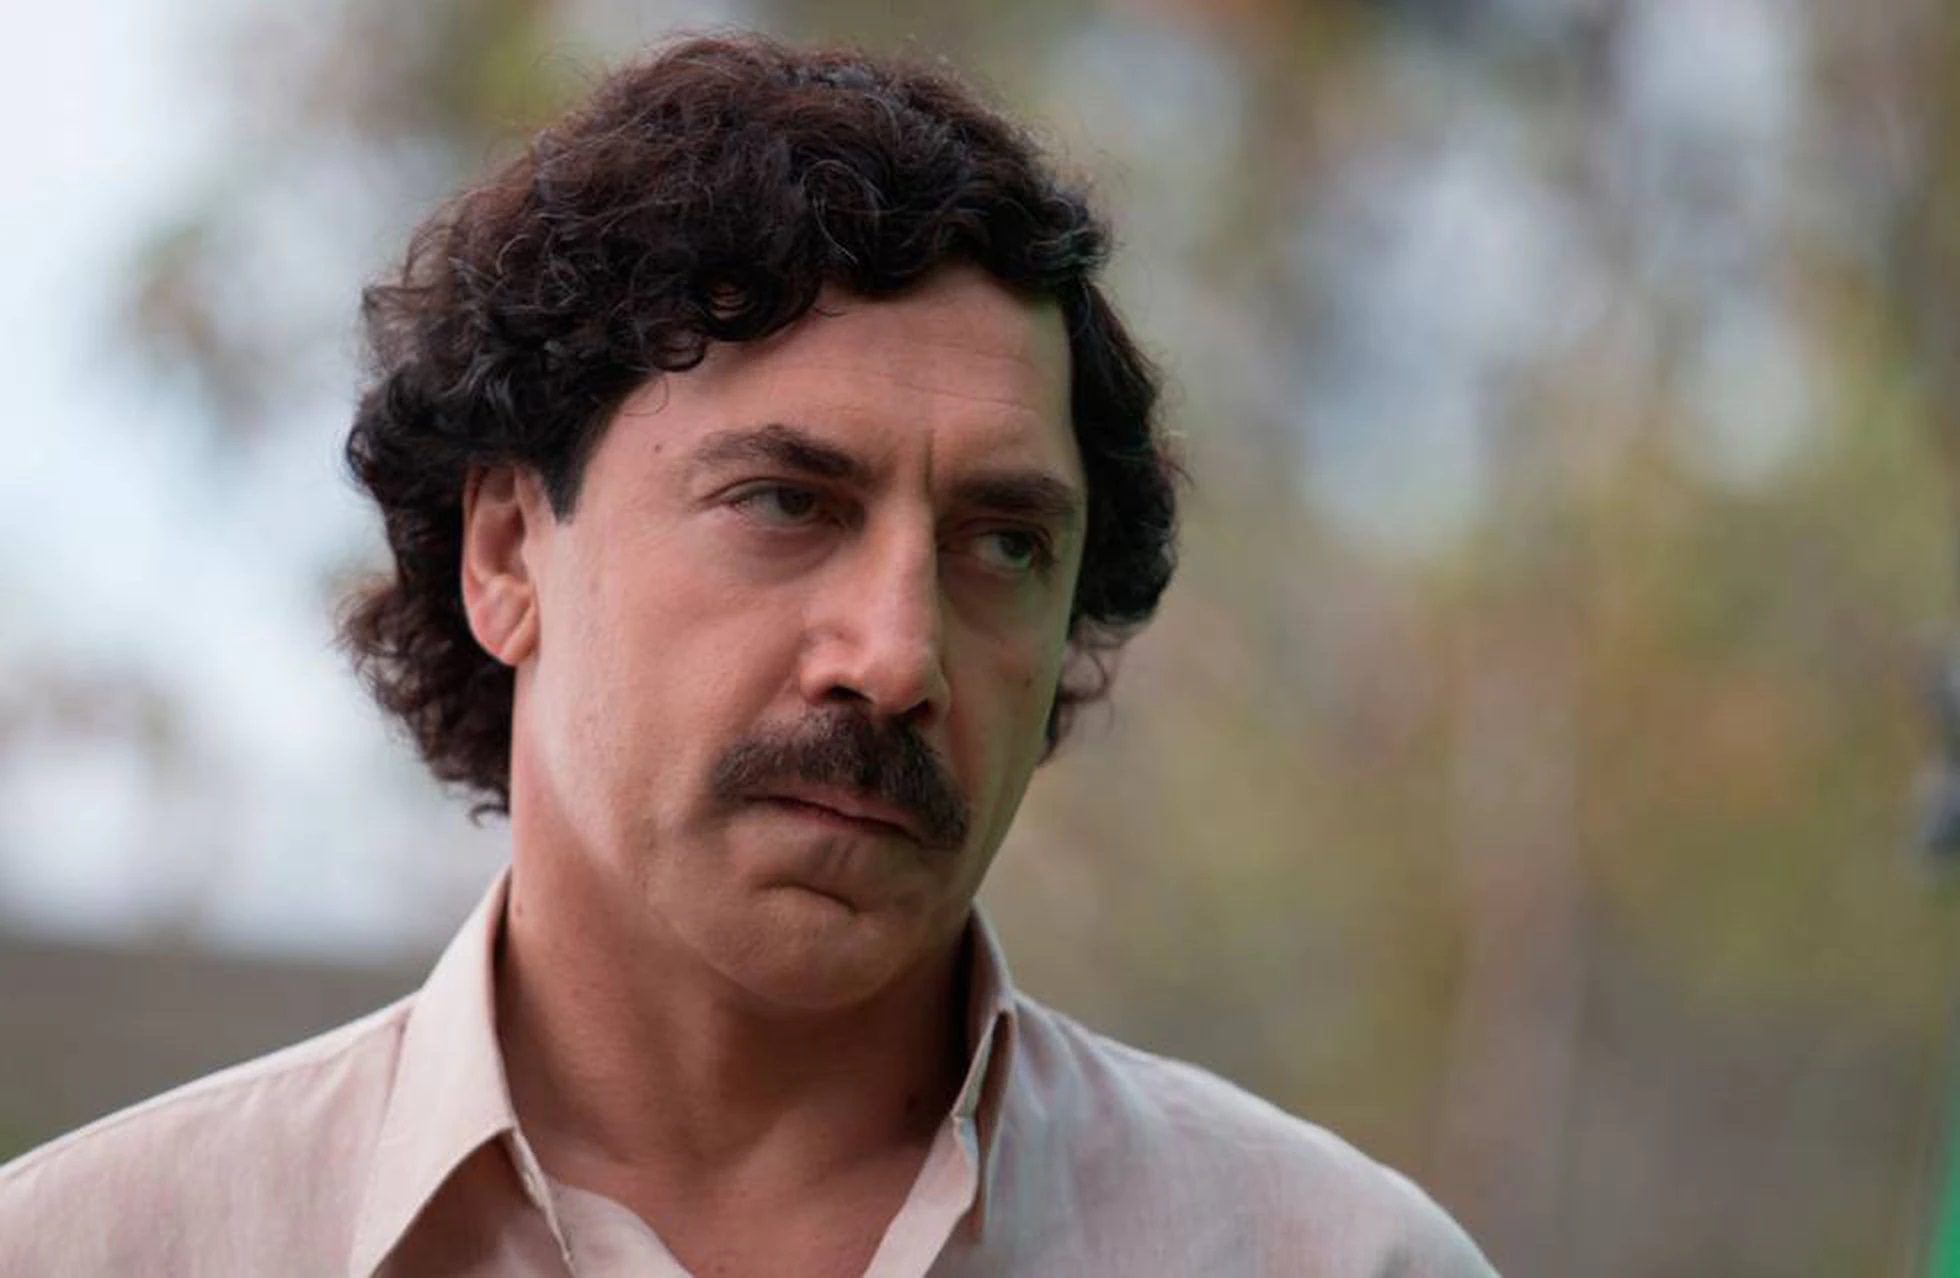 De ″rei da cocaína″ a figura pop. Pablo Escobar morreu há 25 anos